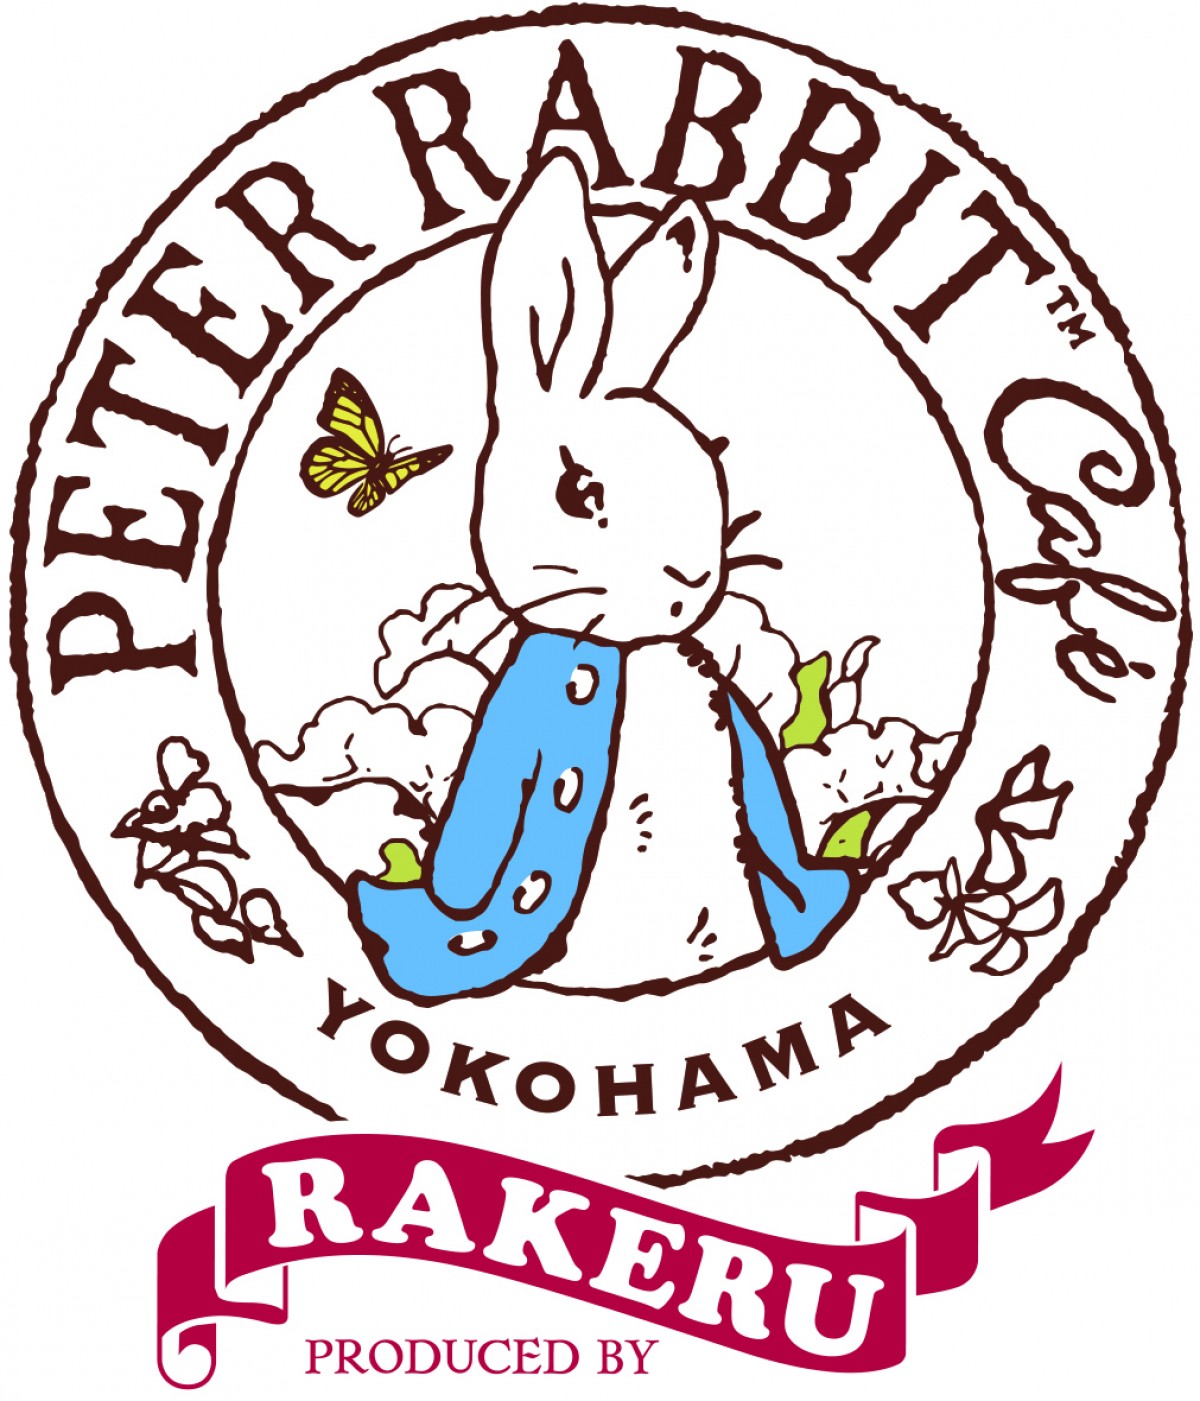 「ピーターラビットカフェ」2号店が横浜ハンマーヘッドにオープン